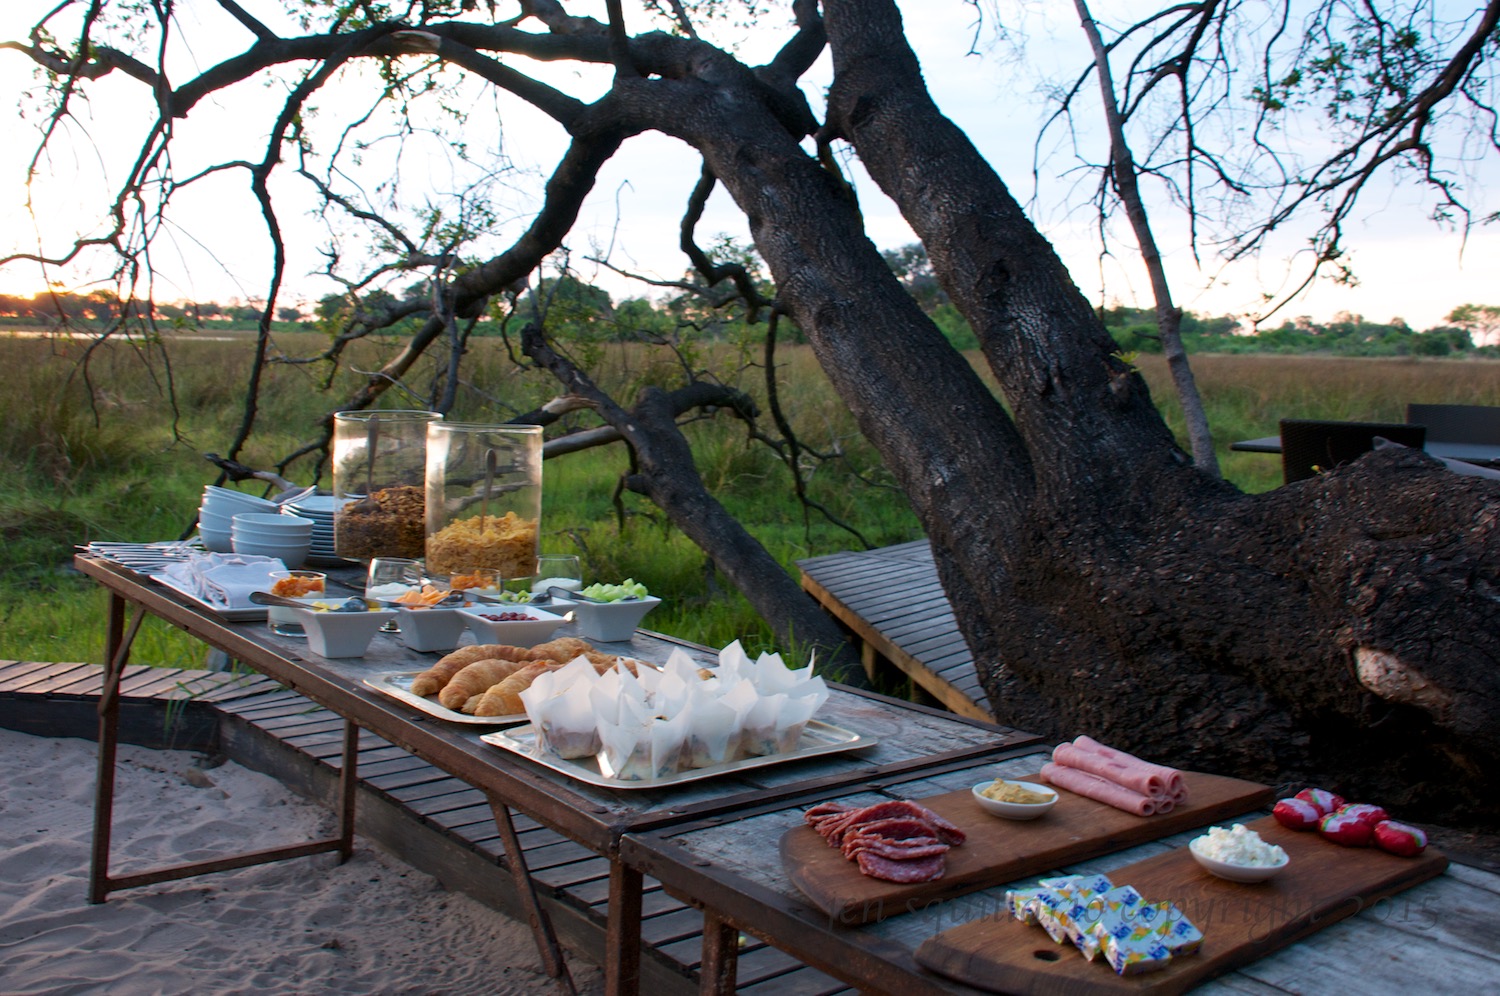  Pre-Safari breakfast with a view of the bush. 